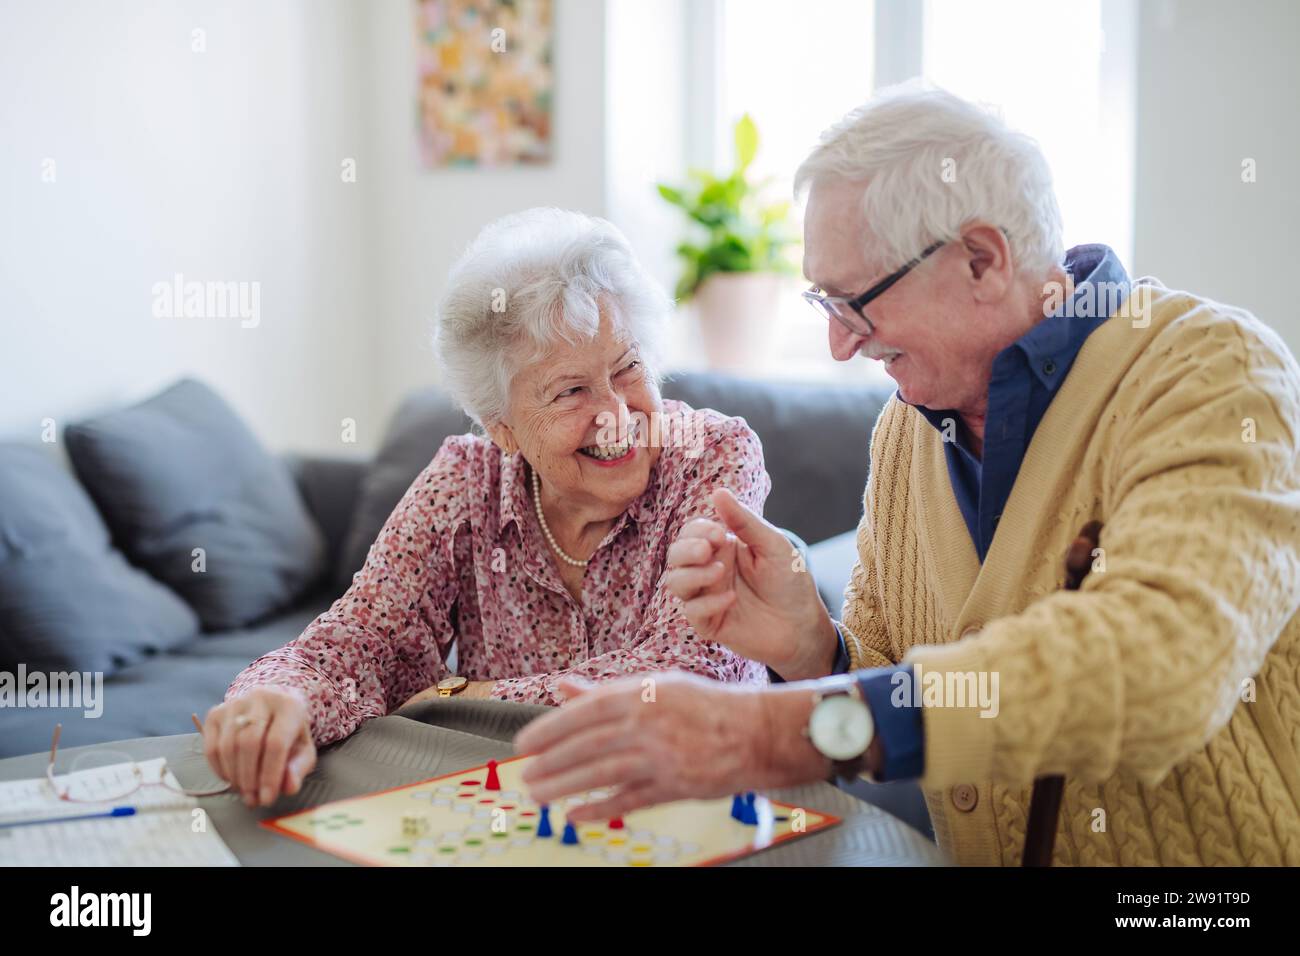 Heureux couple senior jouant au jeu de société ludo à la maison Banque D'Images